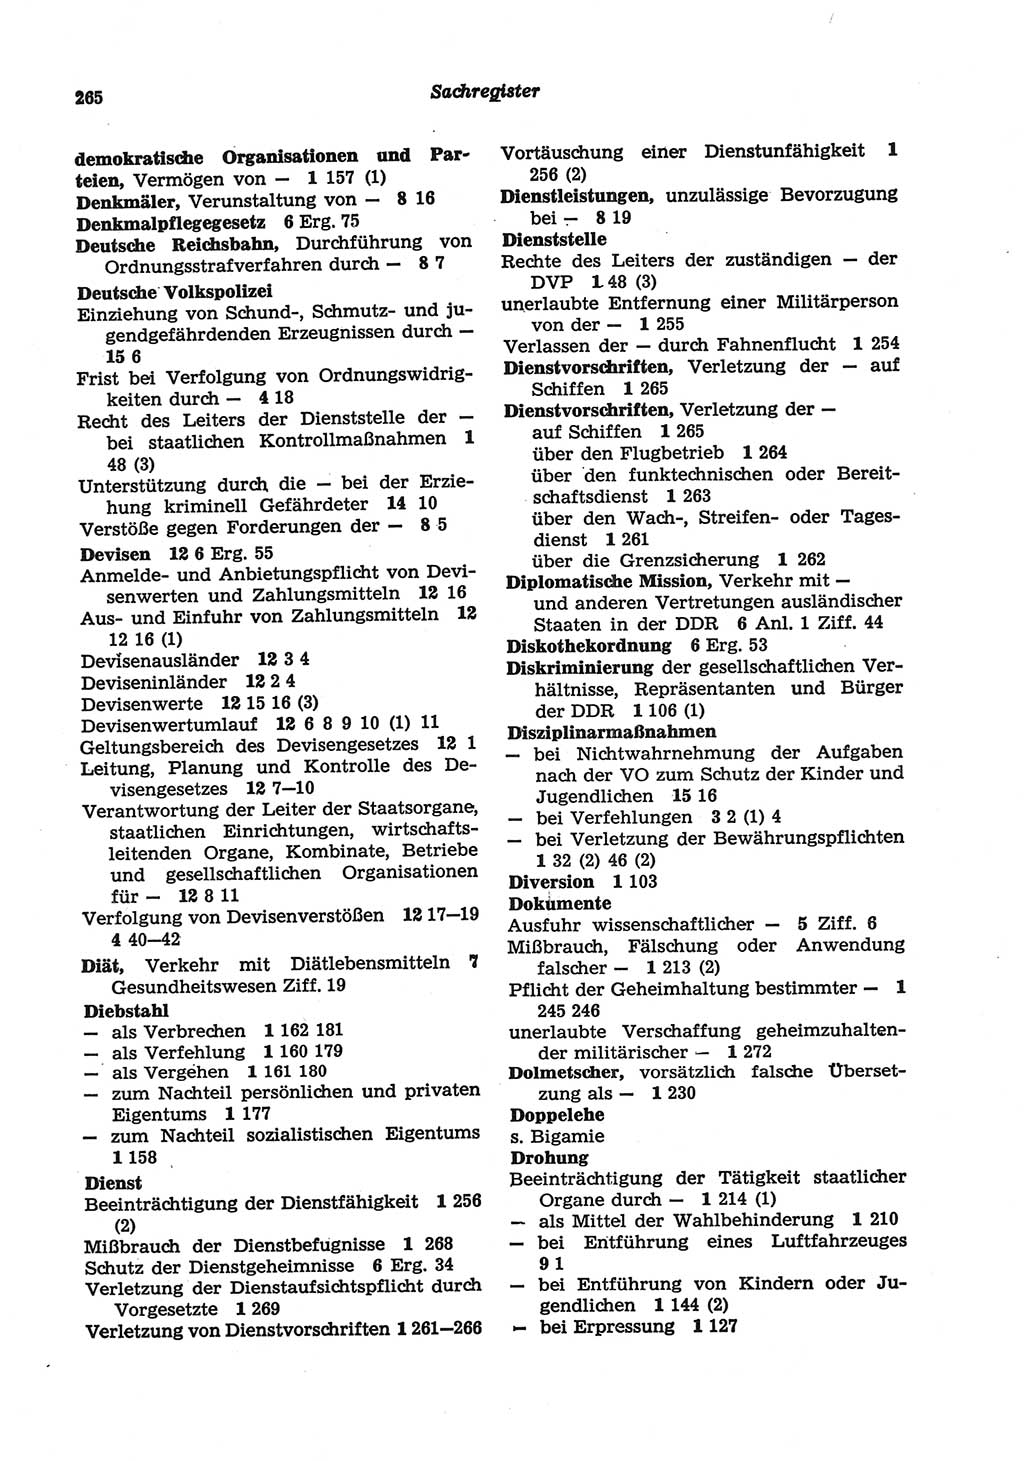 Strafgesetzbuch (StGB) der Deutschen Demokratischen Republik (DDR) und angrenzende Gesetze und Bestimmungen 1977, Seite 265 (StGB DDR Ges. Best. 1977, S. 265)